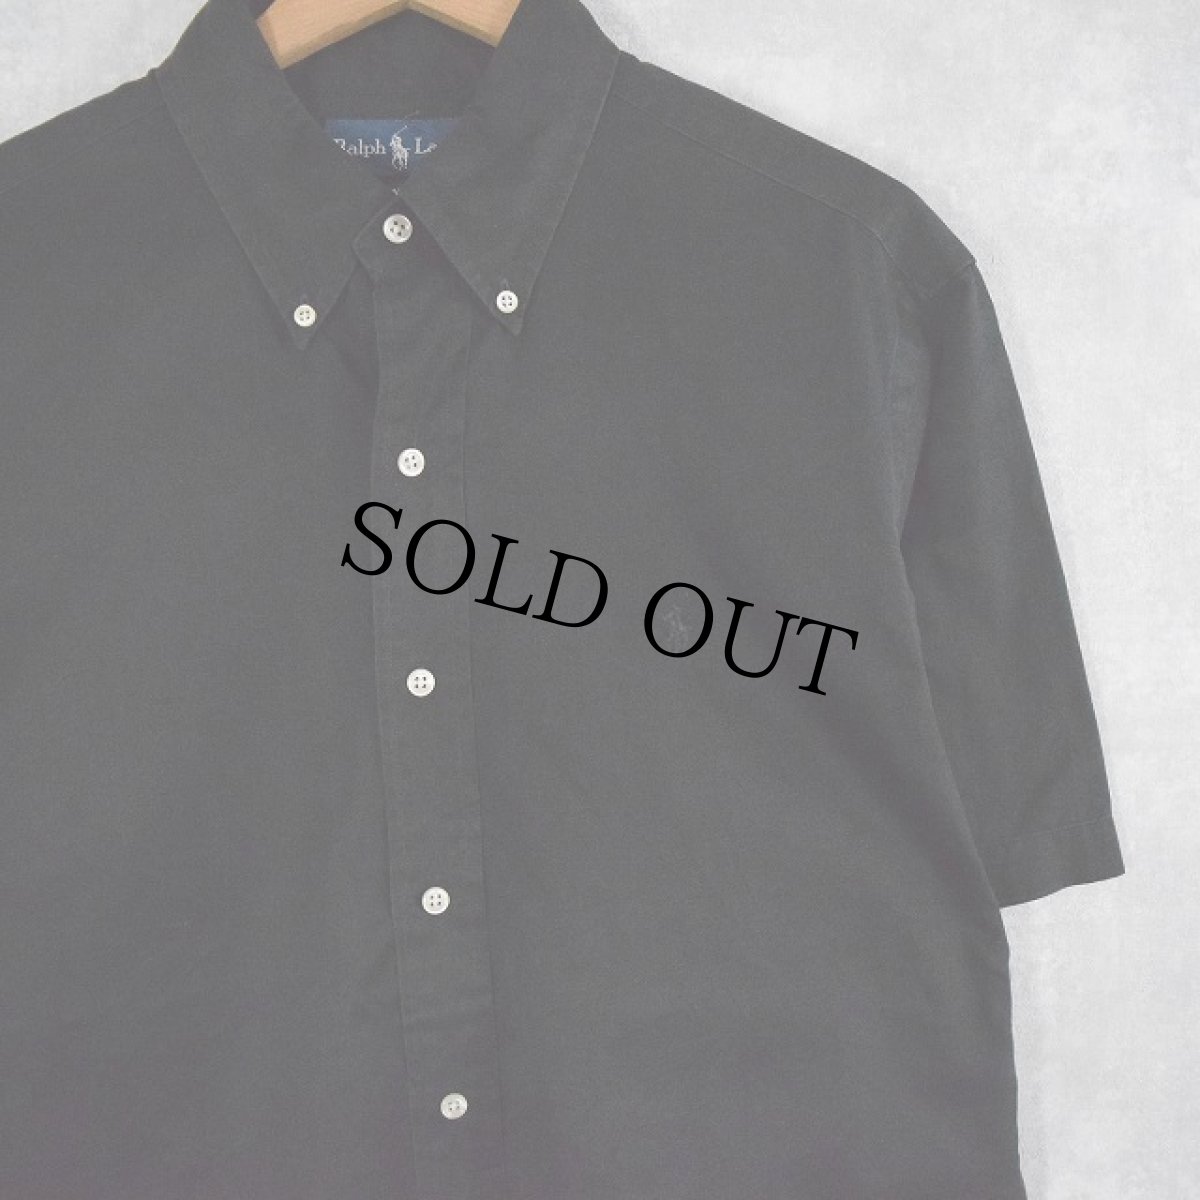 画像1: Ralph Lauren "CLASSIC FIT" ボタンダウンコットンシャツ BLACK M (1)